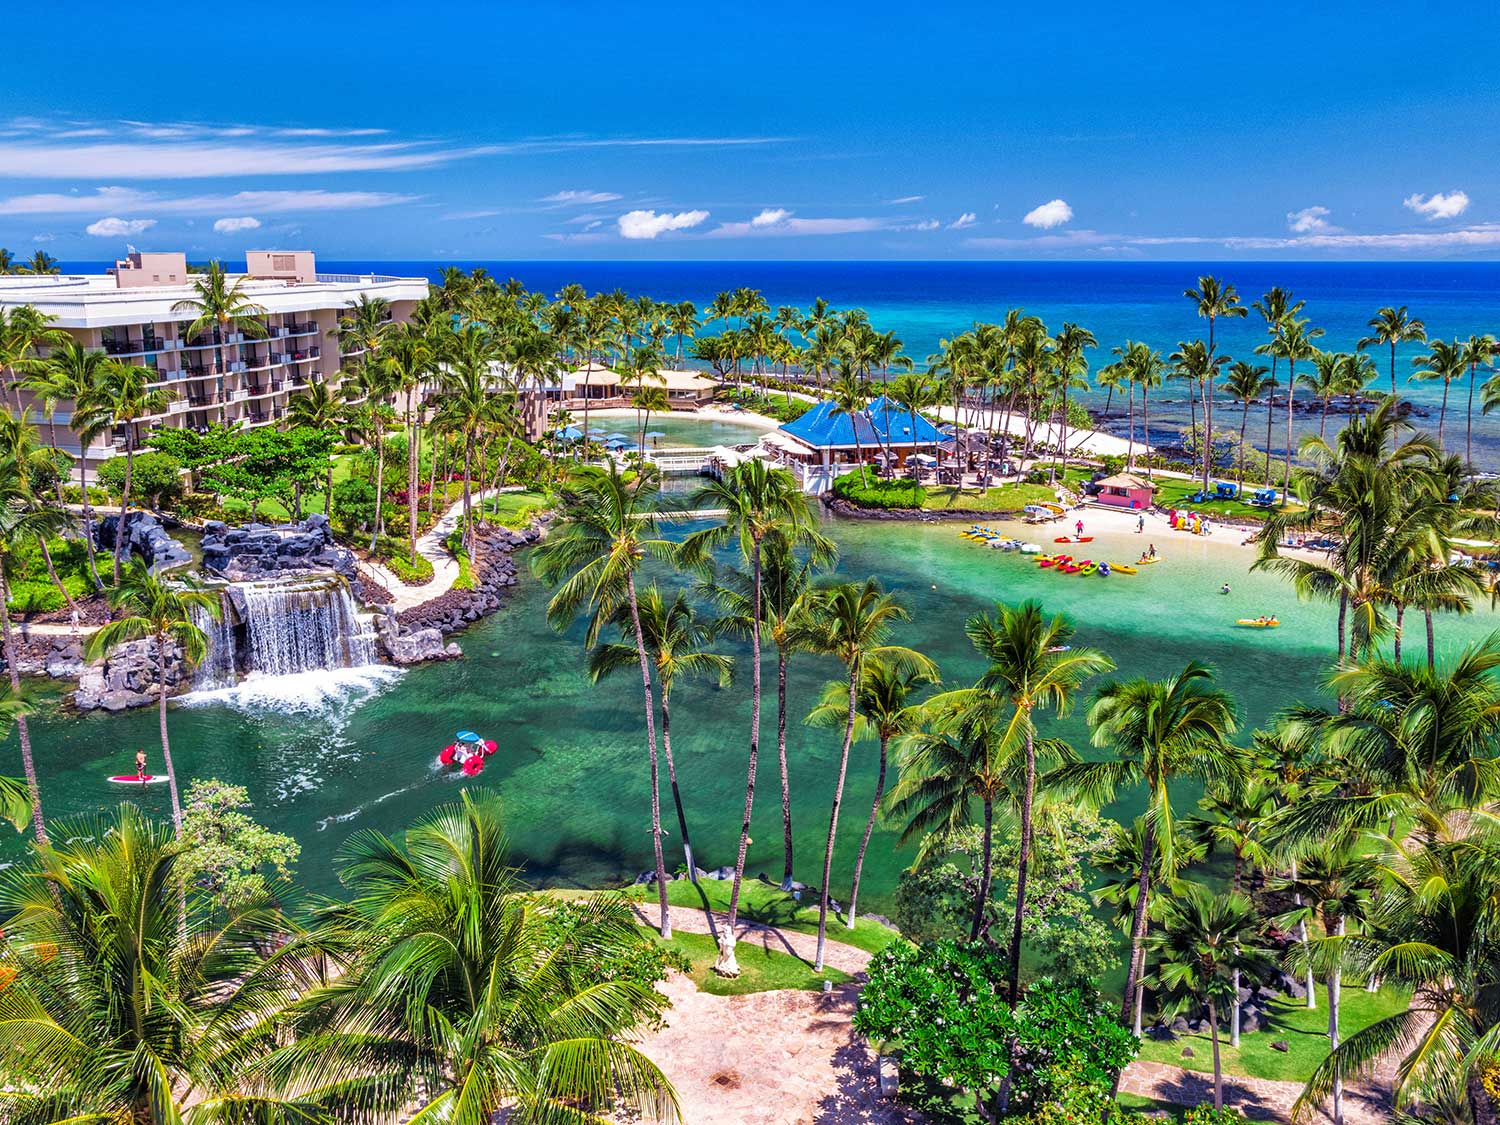 Hilton Hawaiian Village Waikiki Beach Resort Hotel Review